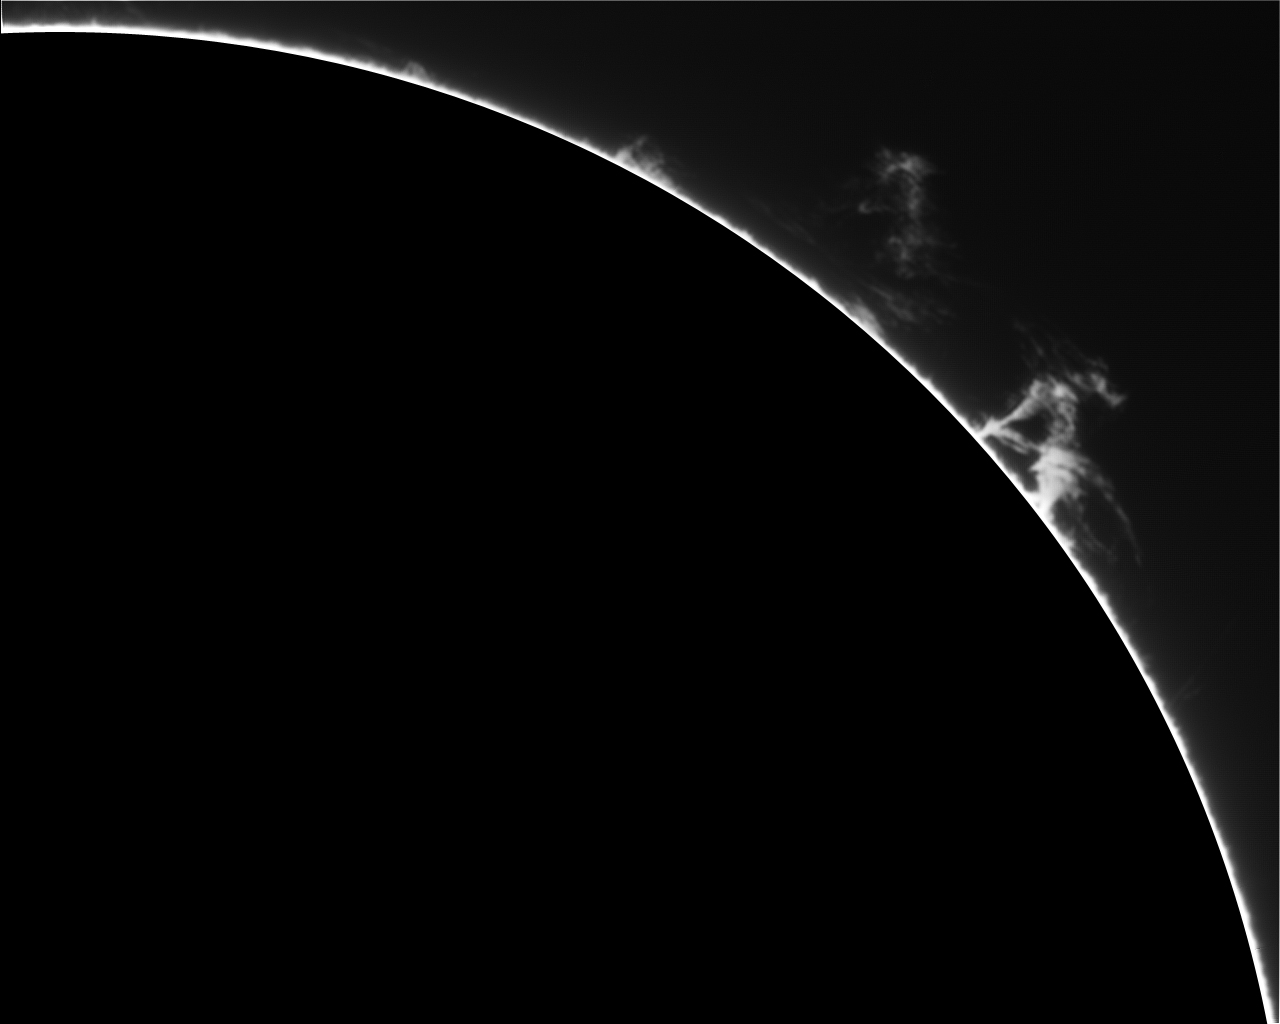 Protubérance solaire en Hα le 17/04/11, PST & barlow 3 x, image en niveaux de gris